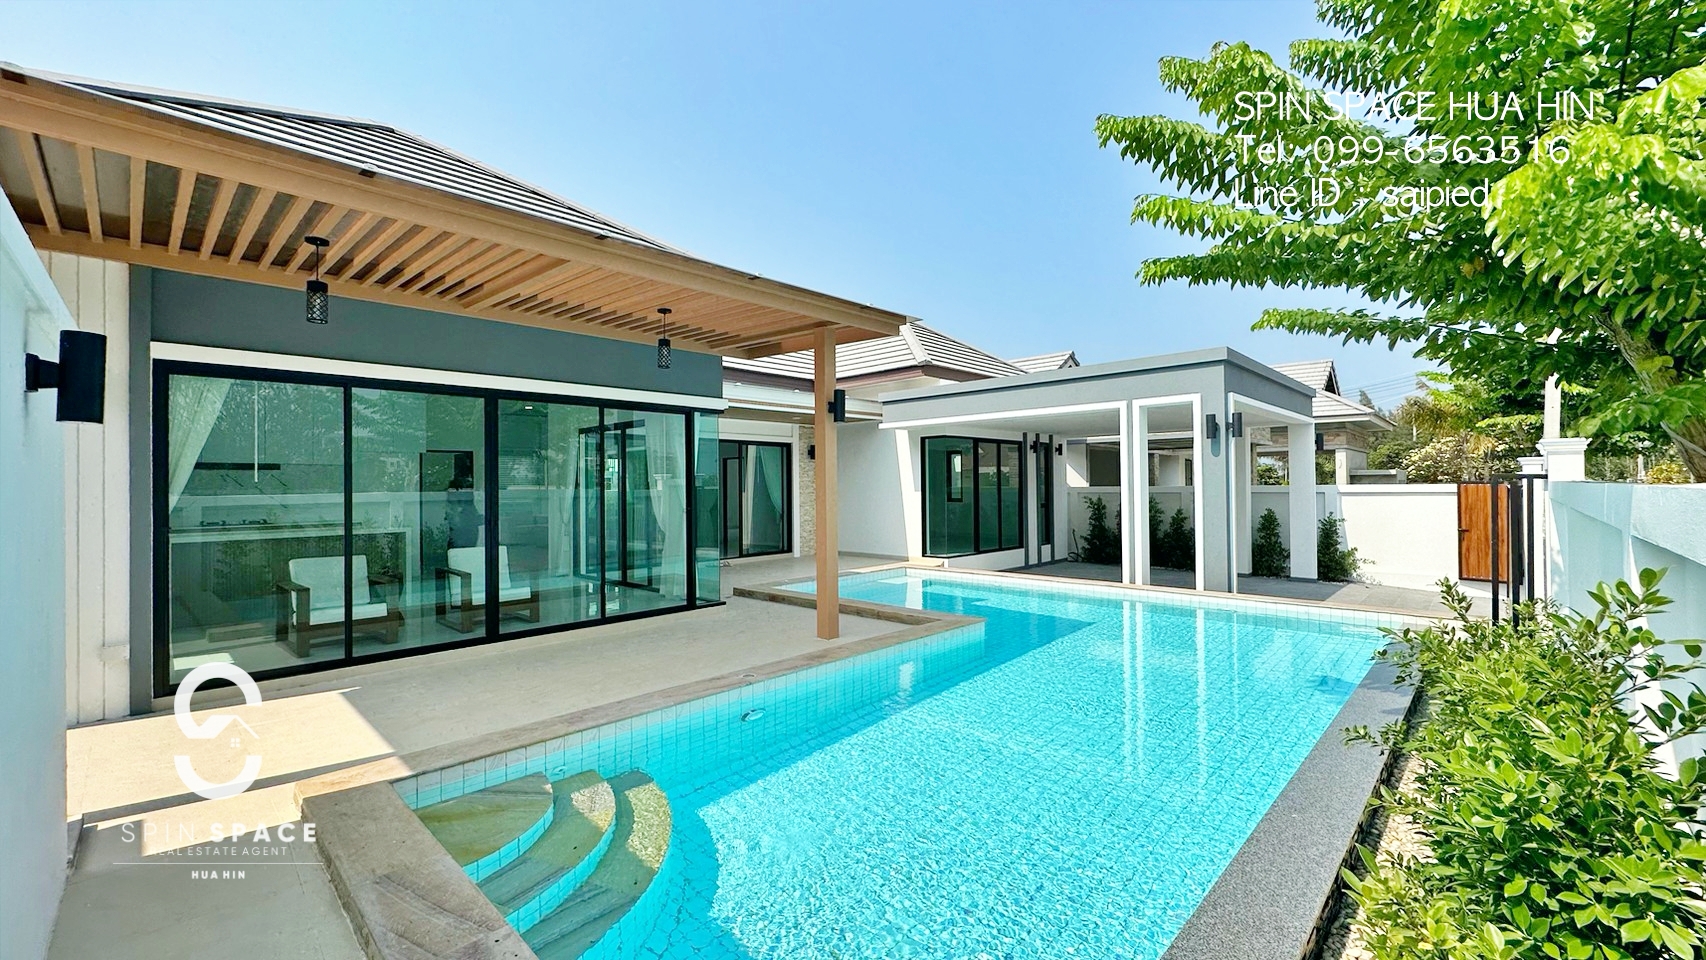 Splendid Villa For Sale Close To Hua Hin City Centre